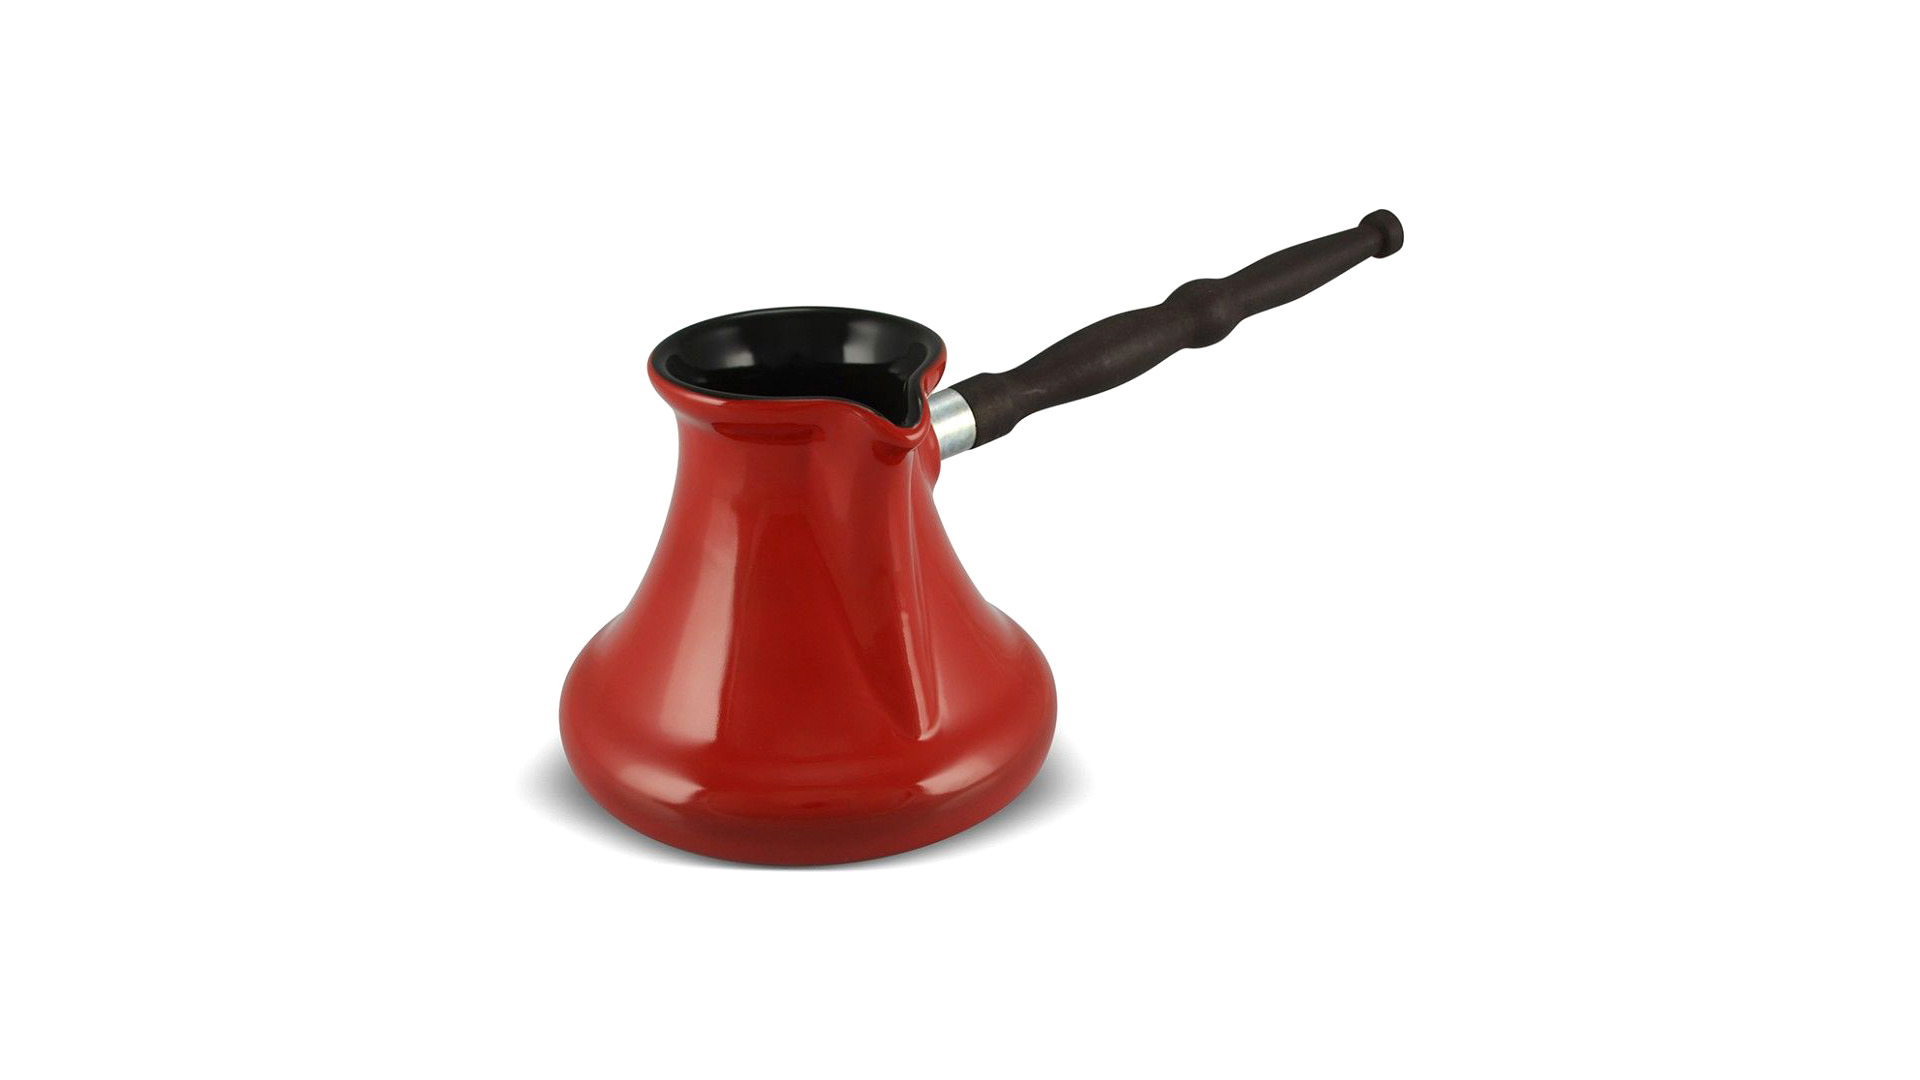 Турка с индукционным покрытием Ceraflame Gourmet Ibrik 550 мл, керамика, красная